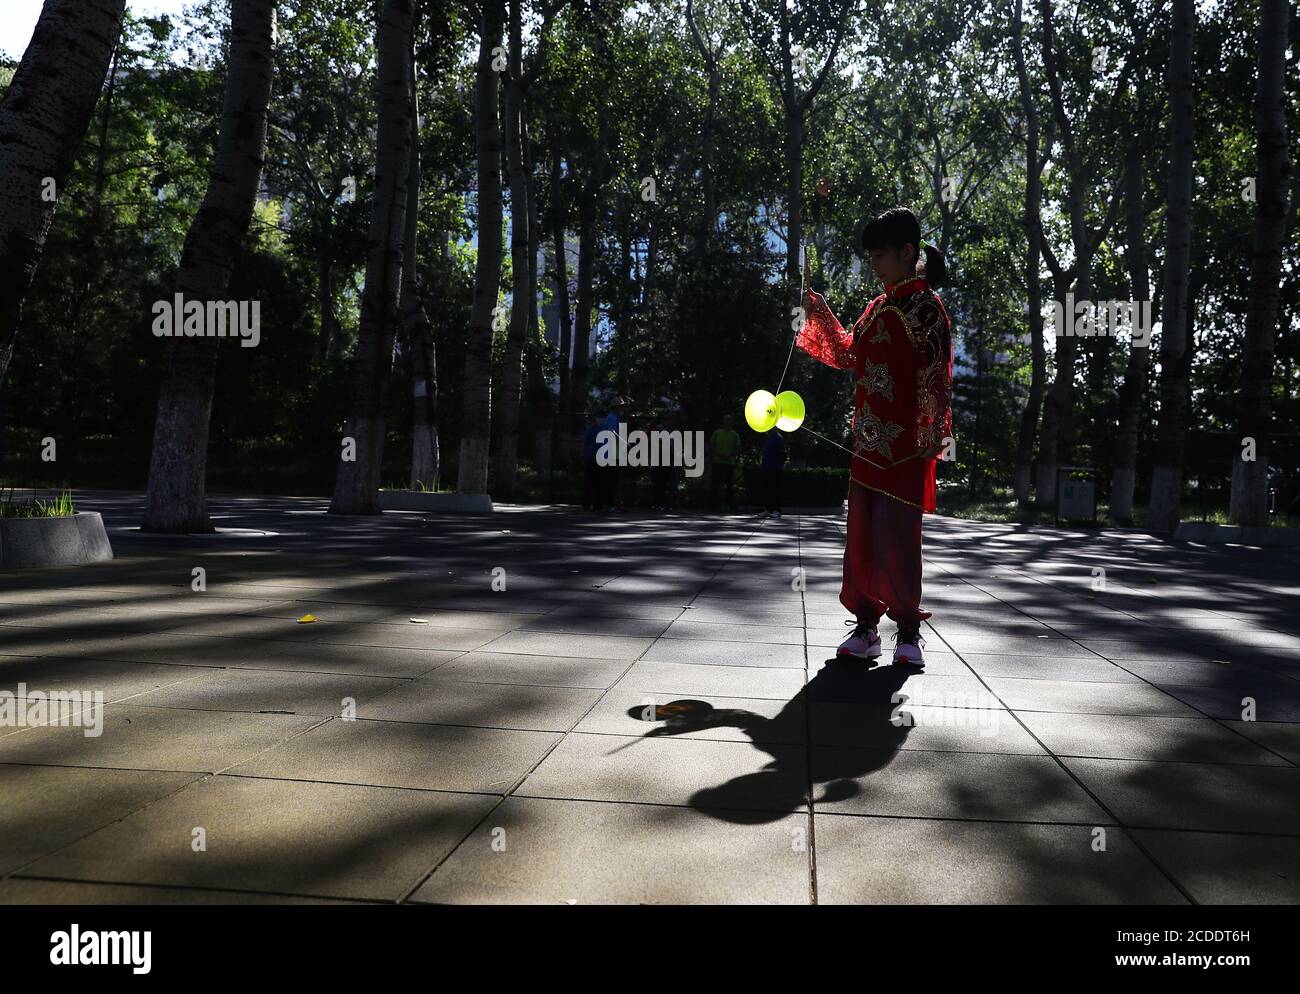 (200828) -- PEKING, 28. August 2020 (Xinhua) -- Dong Yutong spielt Diabolo auf dem Wukesong Diabolo Kulturplatz in Peking, Hauptstadt von China, 11. August 2020. Dong Shulin, 66, lebt mit seiner Frau Mei Yongpei und seiner 9-jährigen Enkelin Dong Yutong in Peking. Dong Shulin begann 2003 Diabolo zu spielen und jetzt spielt die ganze Familie gerne dieses traditionelle Volksspiel, in dem man einen Spinning Top werfen und fangen kann, indem man eine Schnur an zwei Stöcken befestigt. In Dong Shulins Wohnung wurden über 70 Diabolos ringsum platziert. Einige der Diabolos wurden gekauft und andere waren selbst gemacht, besonders Stockfoto